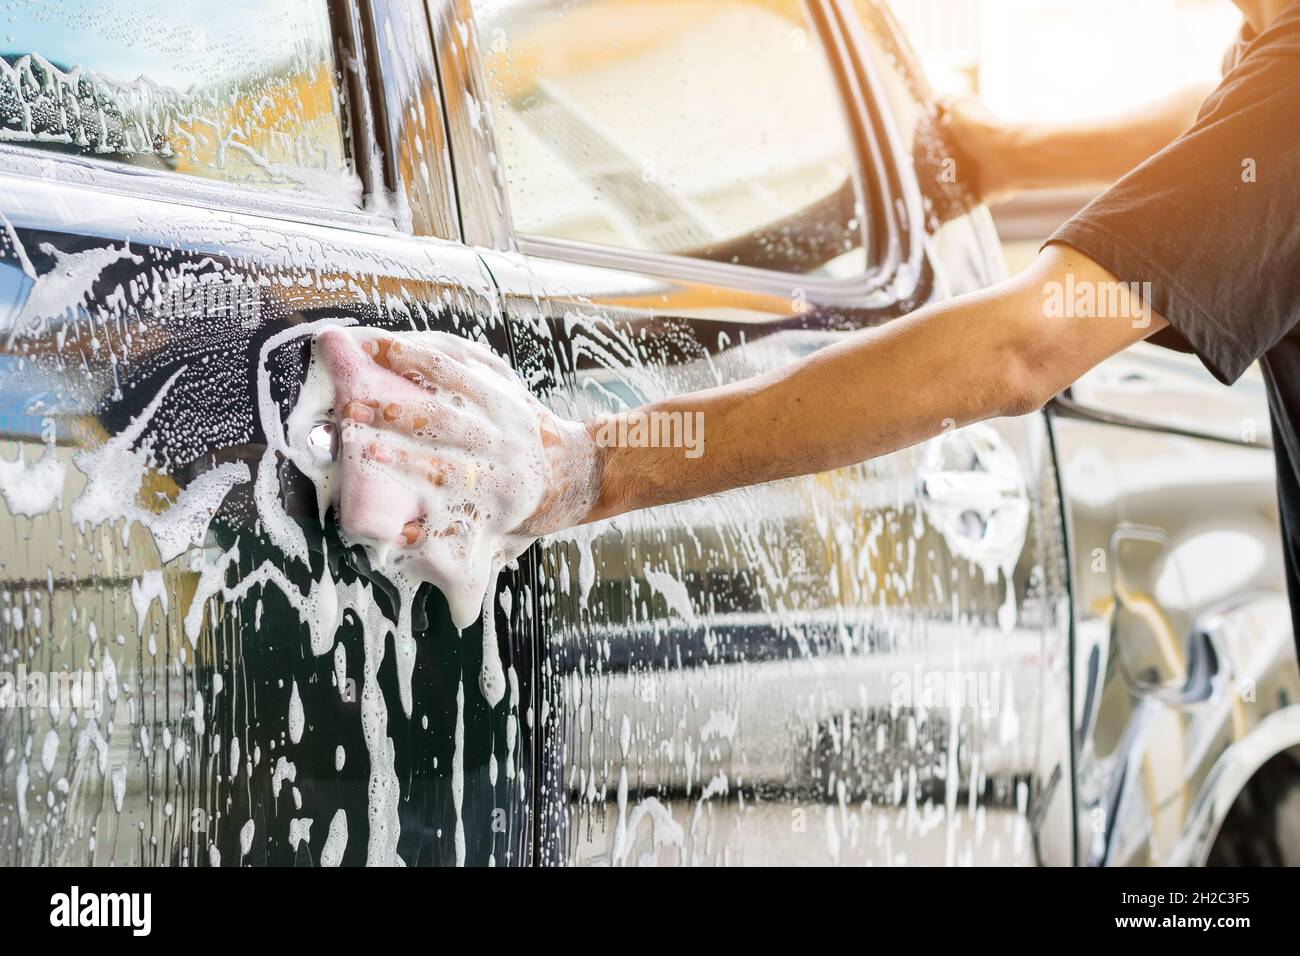 Le personnel du service automobile nettoie une voiture avec une éponge et un lave-auto détaillant et valeting concepts. Banque D'Images